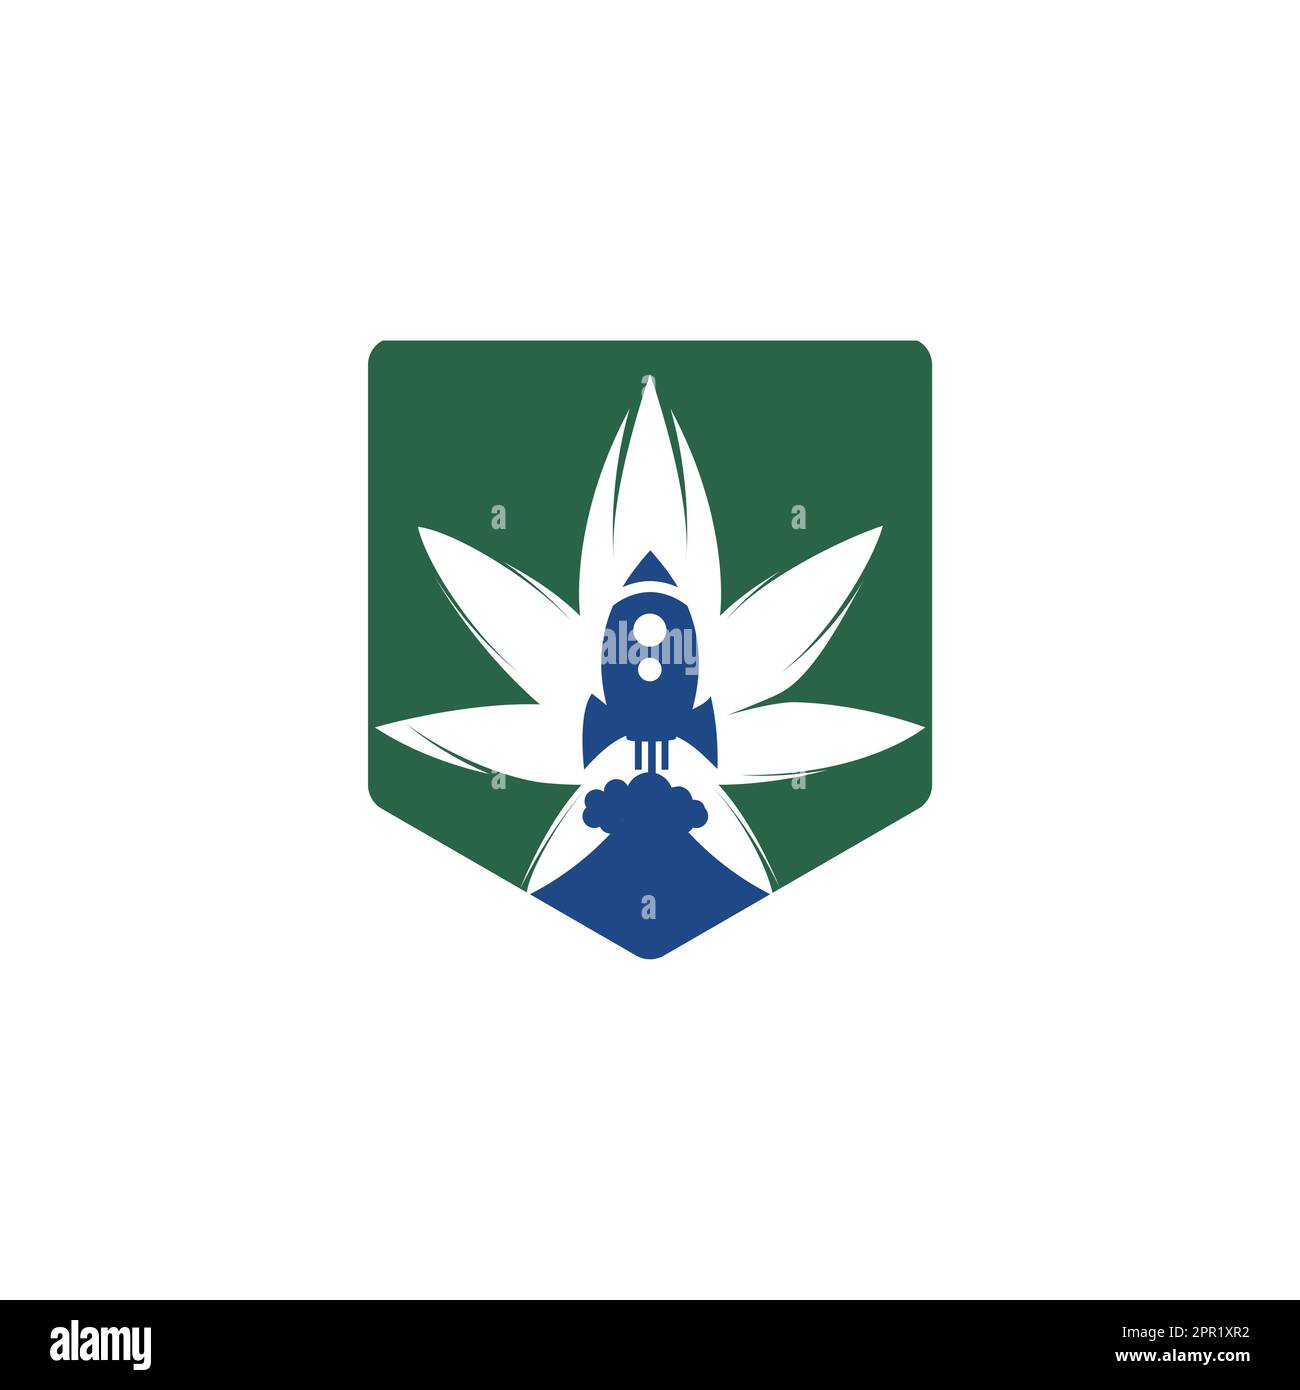 Cannabis-Raketen-Vektor-Logo. Einzigartige Designvorlage für Cannabis- und Raumschiff-Logos. Stock Vektor